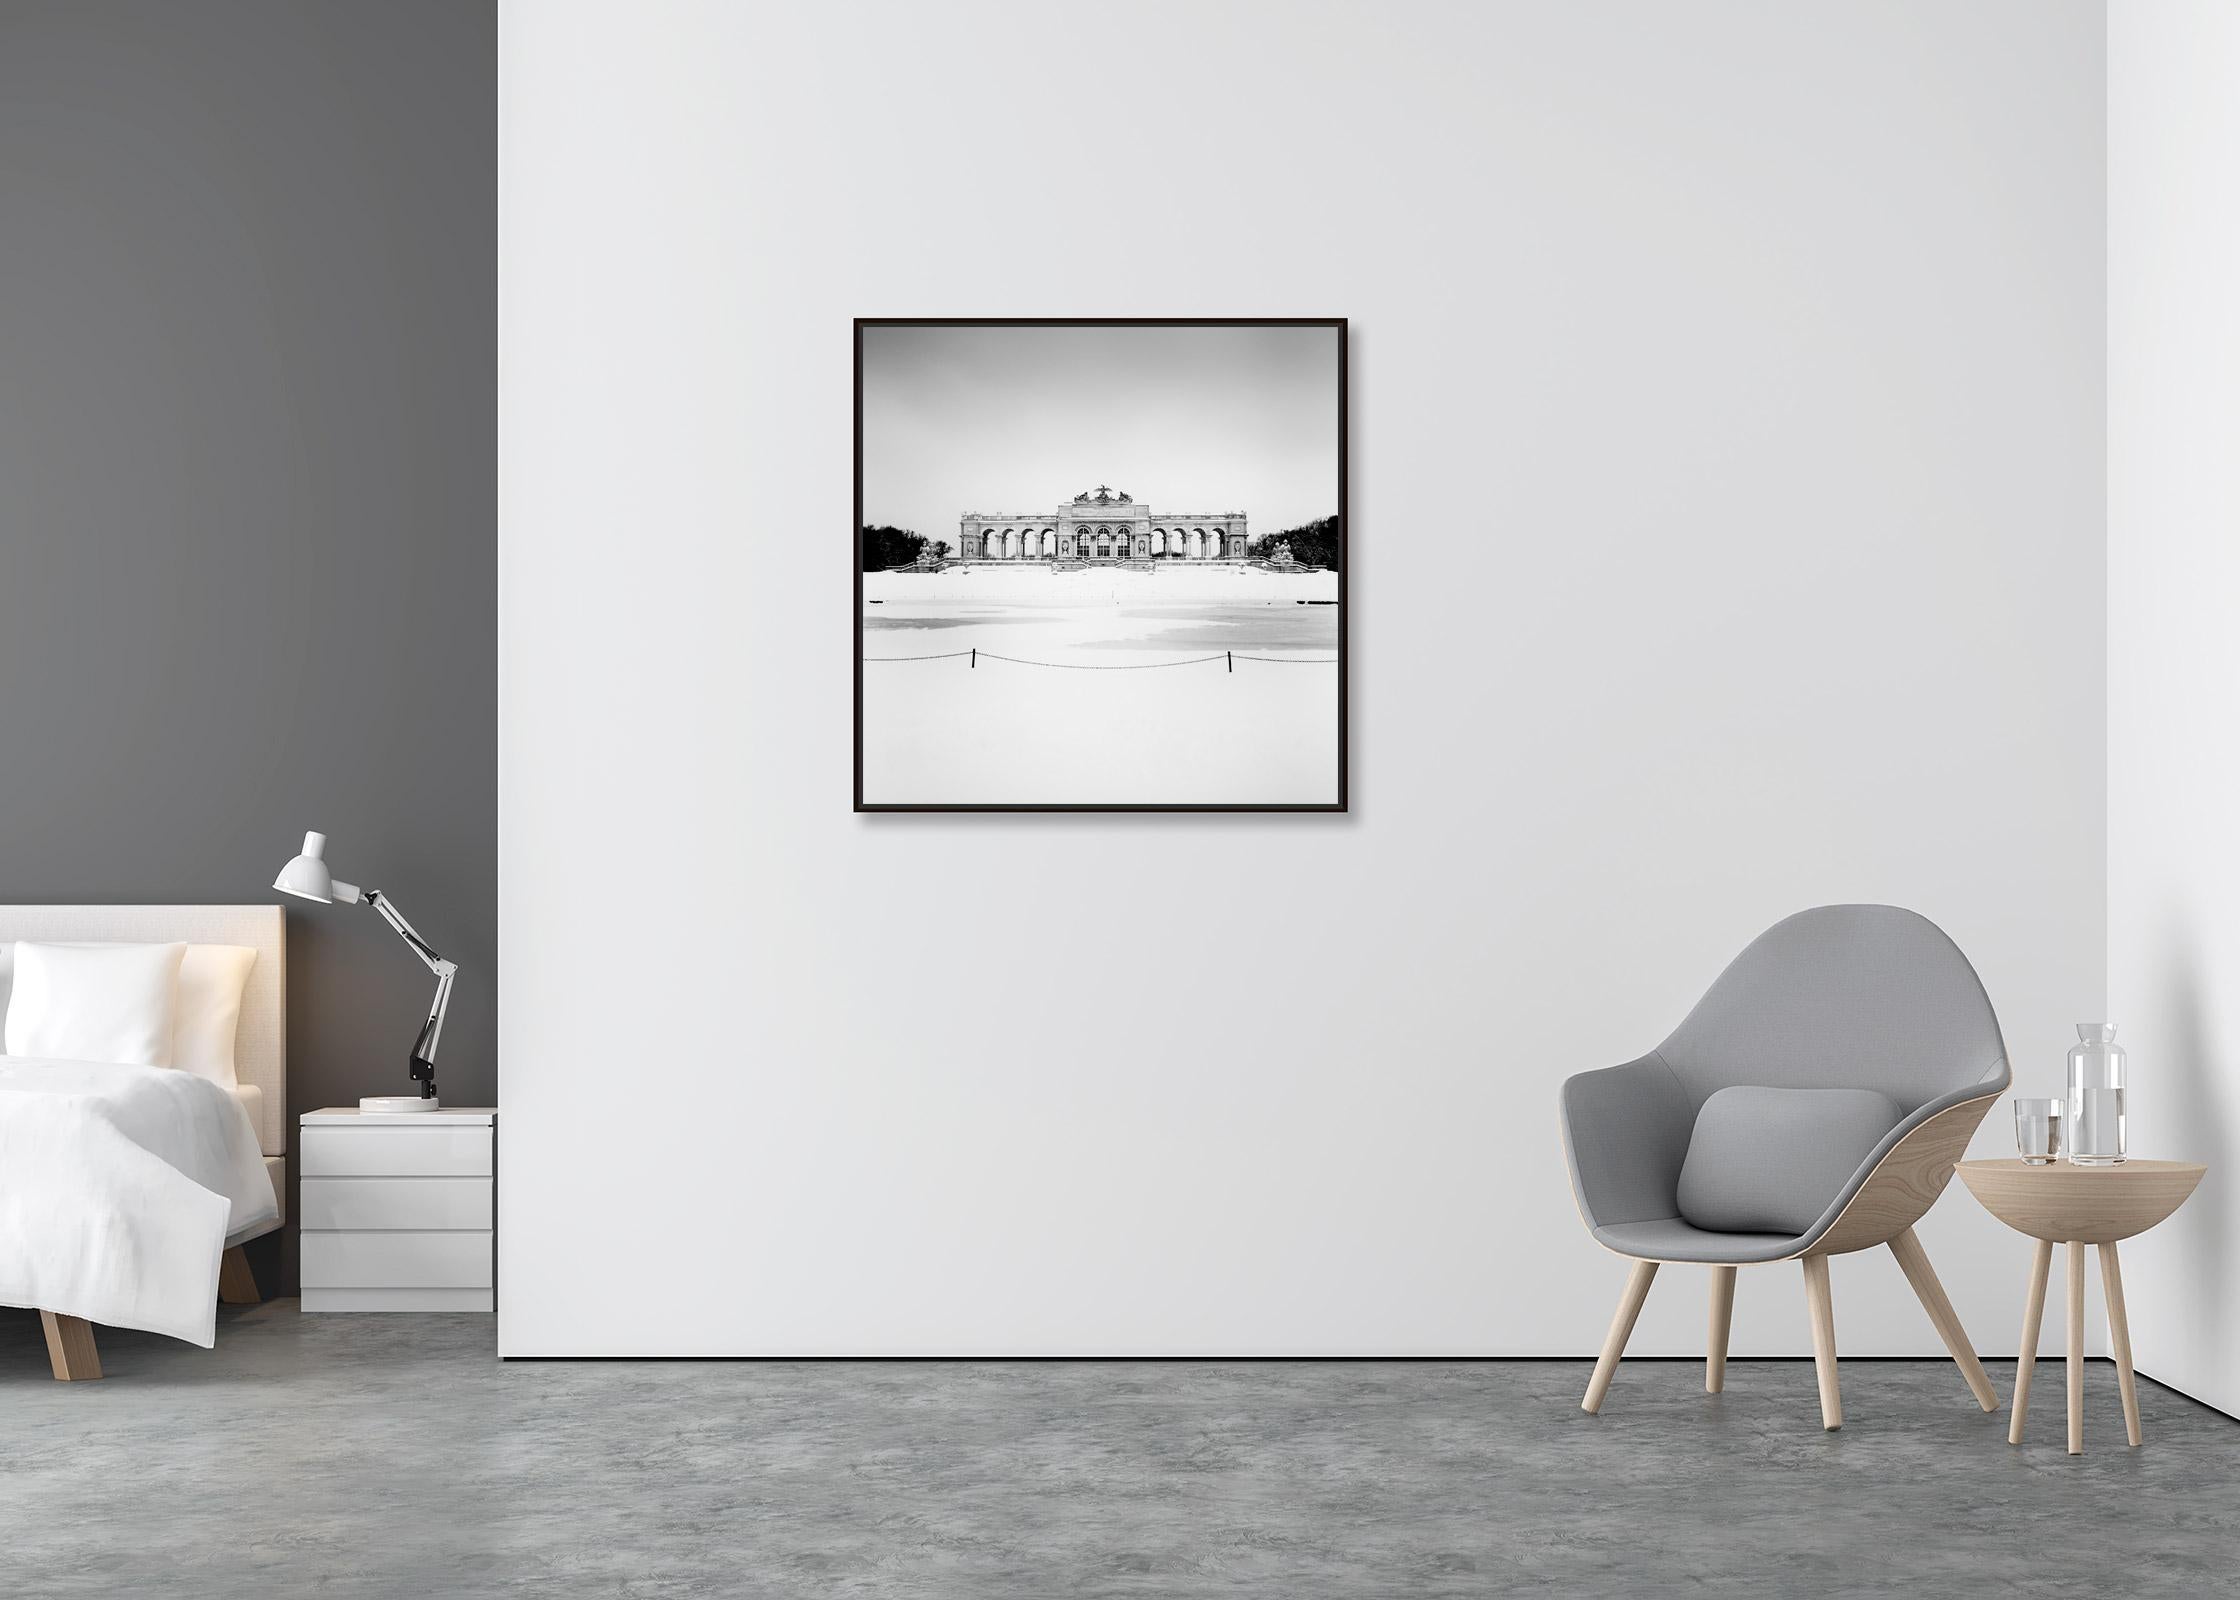 Gloriette Winter, Schloss Schoenbrunn, Vienna, B&W cityscape photography print - Contemporary Photograph by Gerald Berghammer